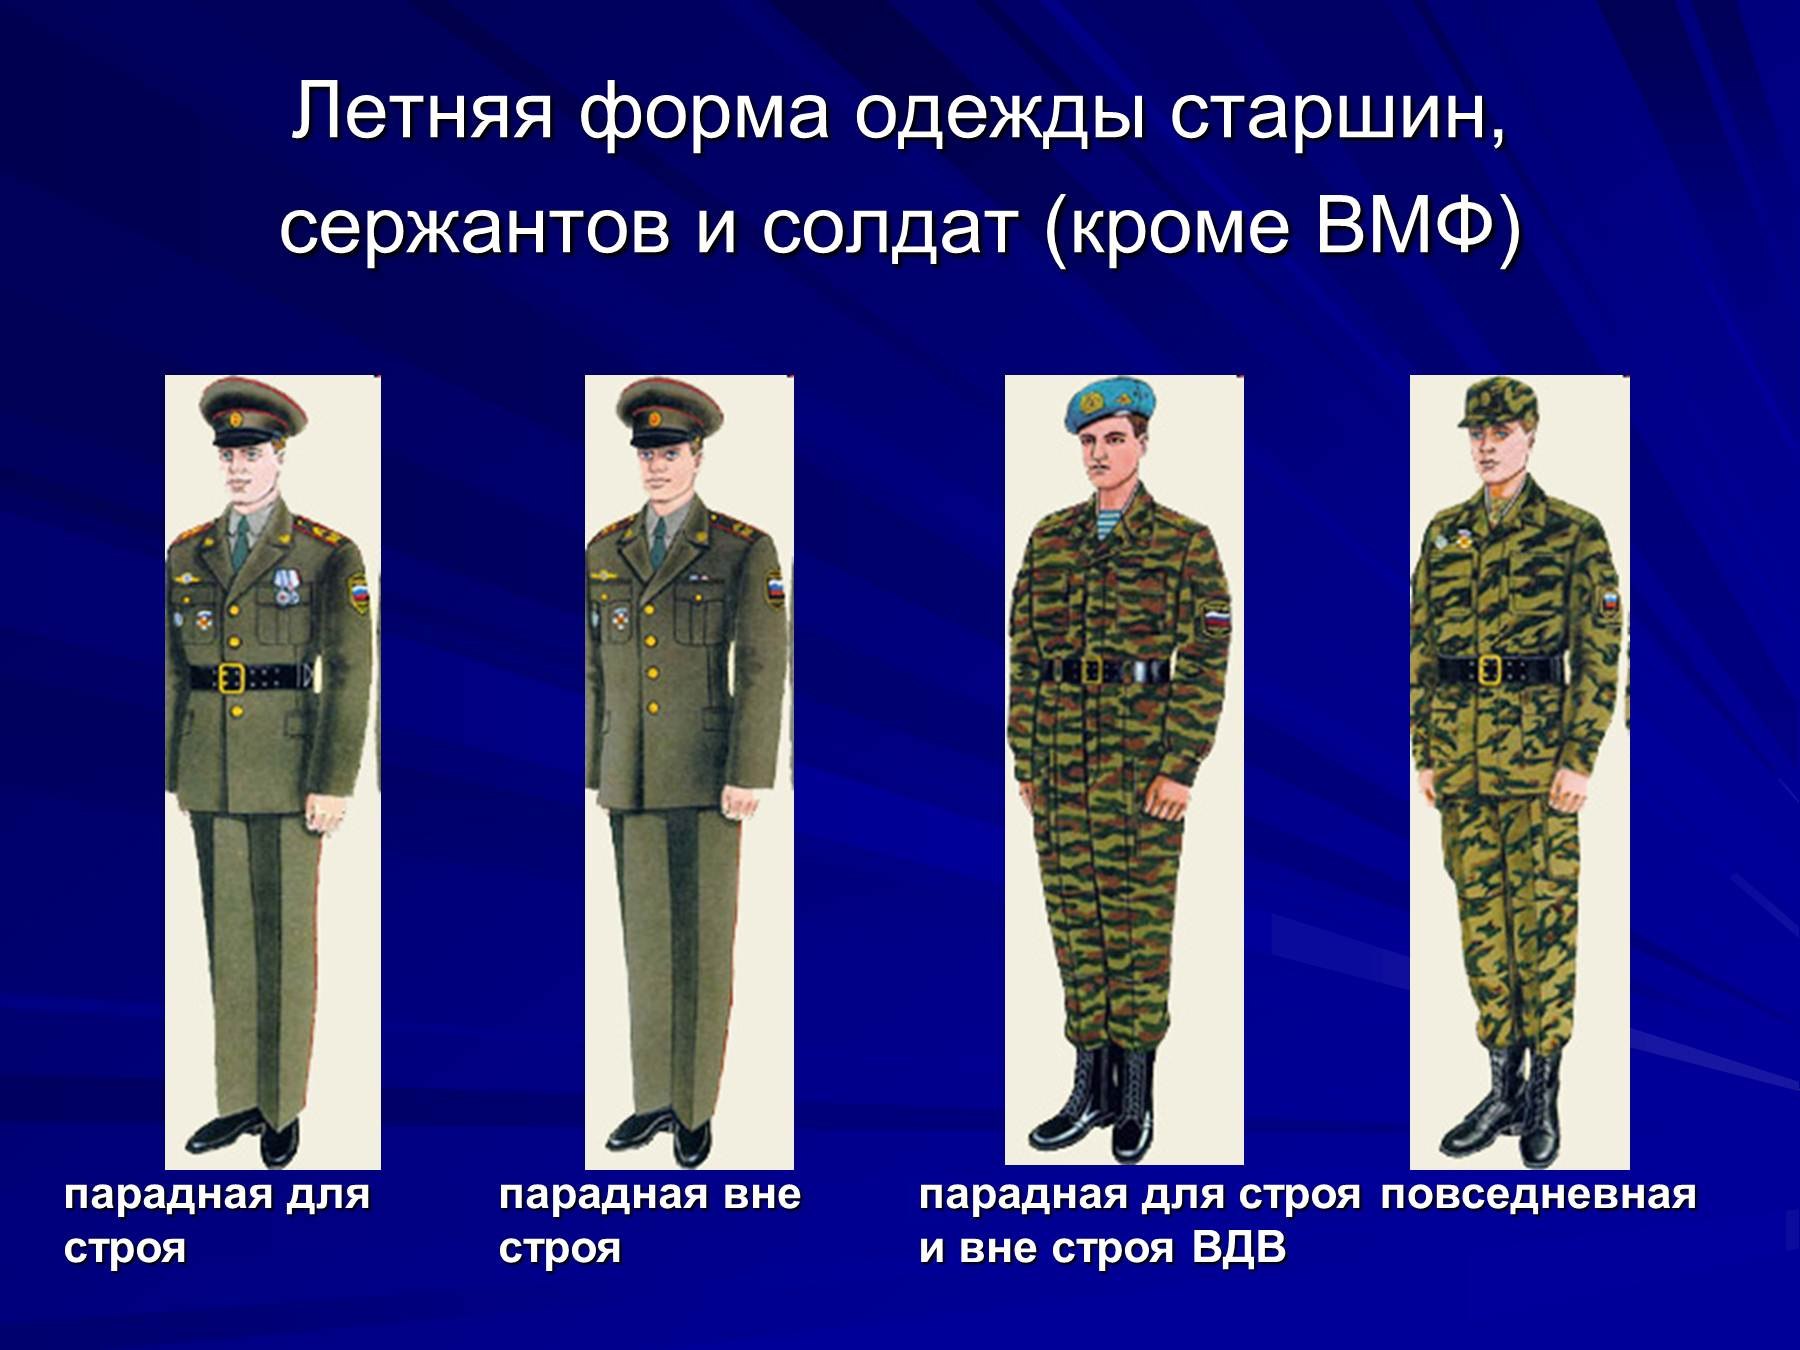 Летняя форма одежды старшин сержантов и солдат кроме ВМФ